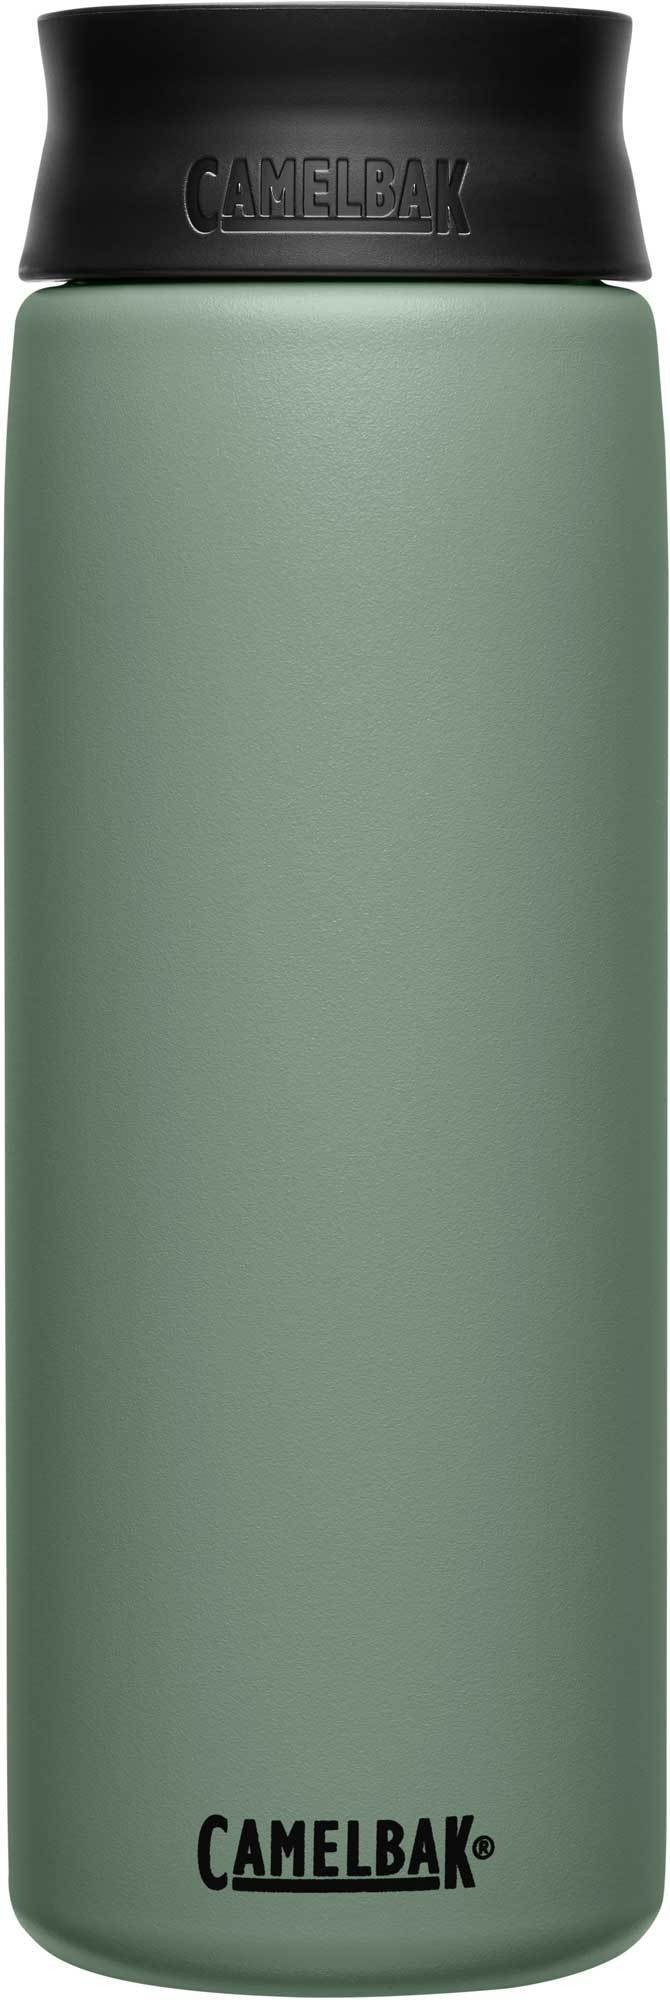 фото Термокружка camelbak hot cap (0,6 литра), зеленая